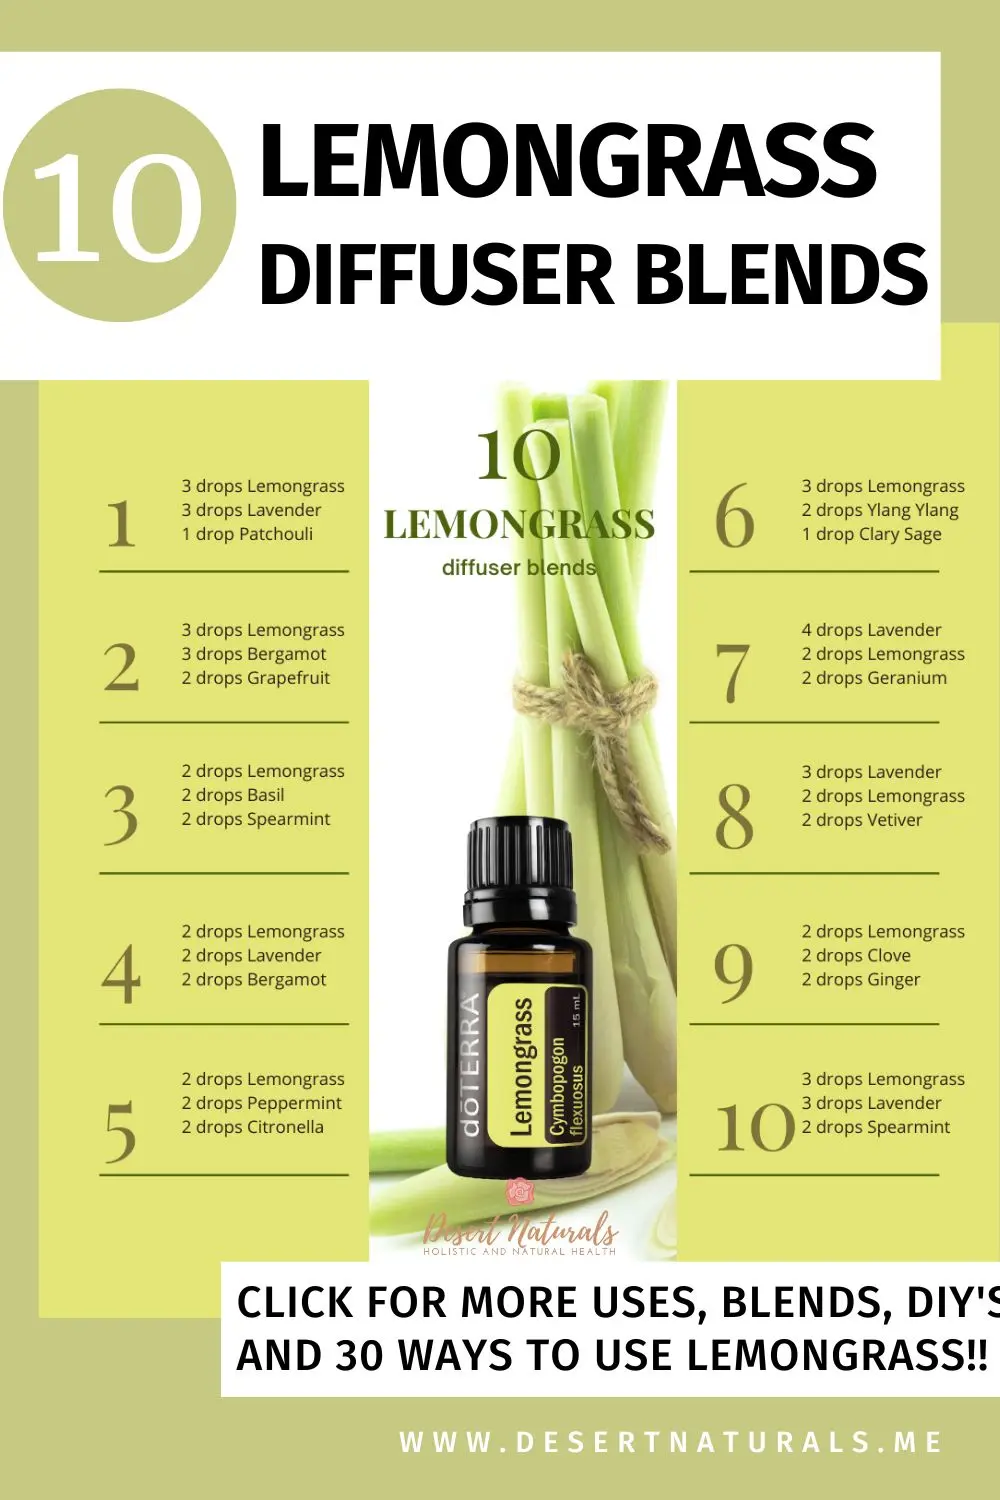 10 lemongrass diffuser blends